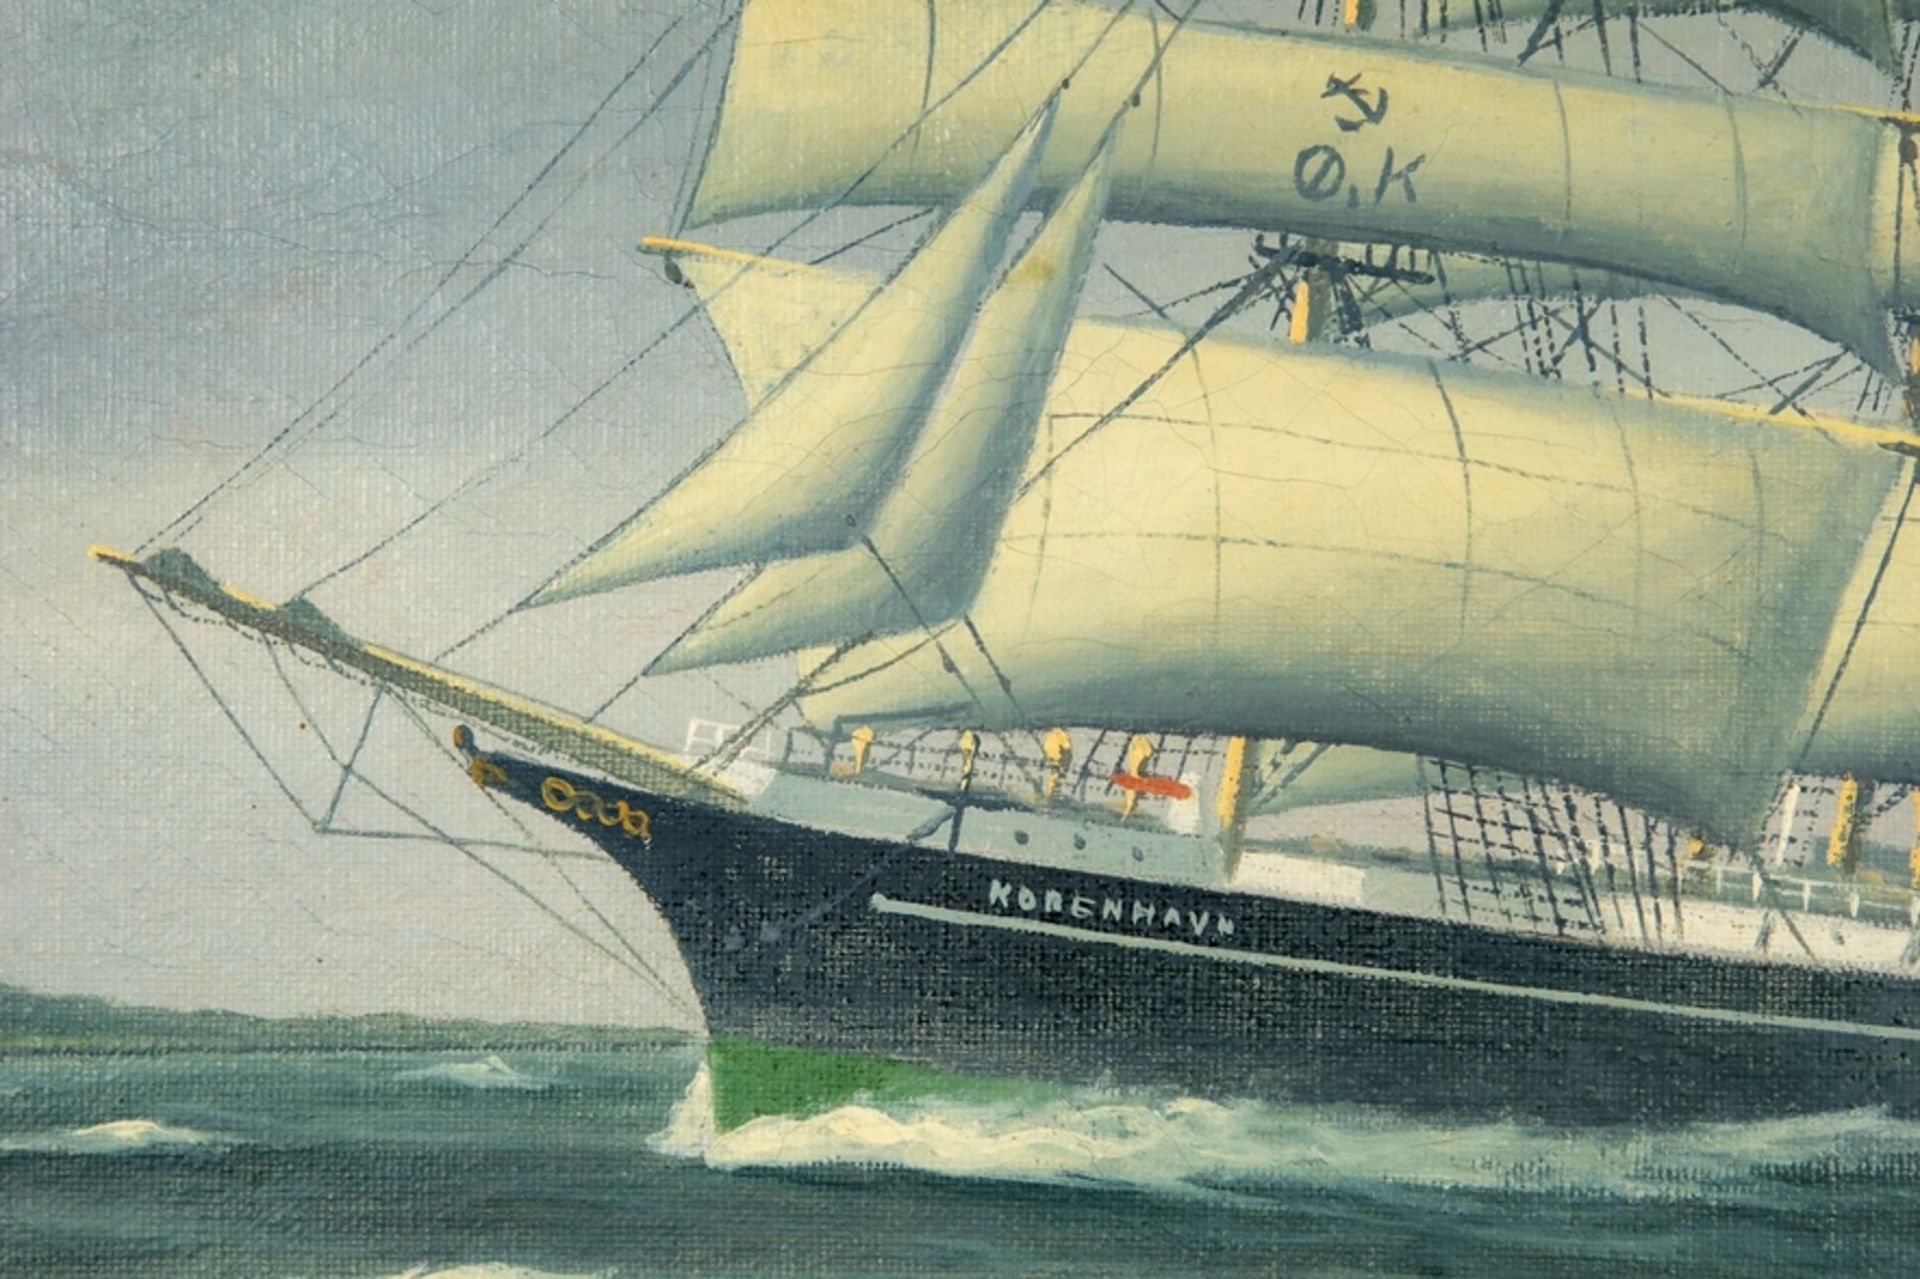 Kapitänsbild der stählernen Fünfmastbark "KOBENHAVN", einem dänischen Segelschulschiff, welches 192 - Bild 4 aus 12